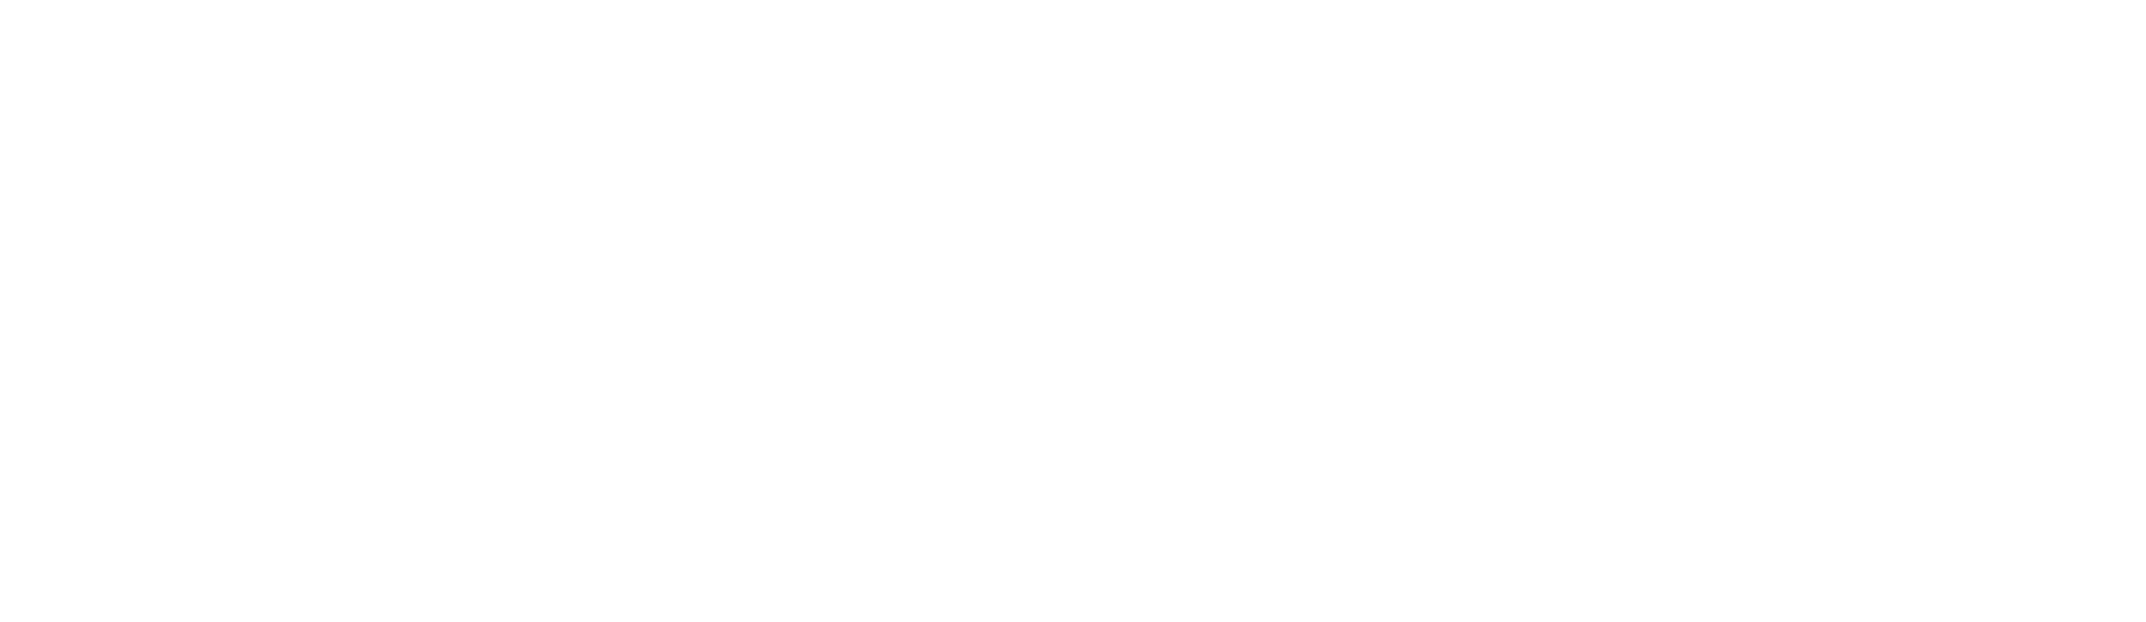 BuildingsIOT-logo-2020-white-3